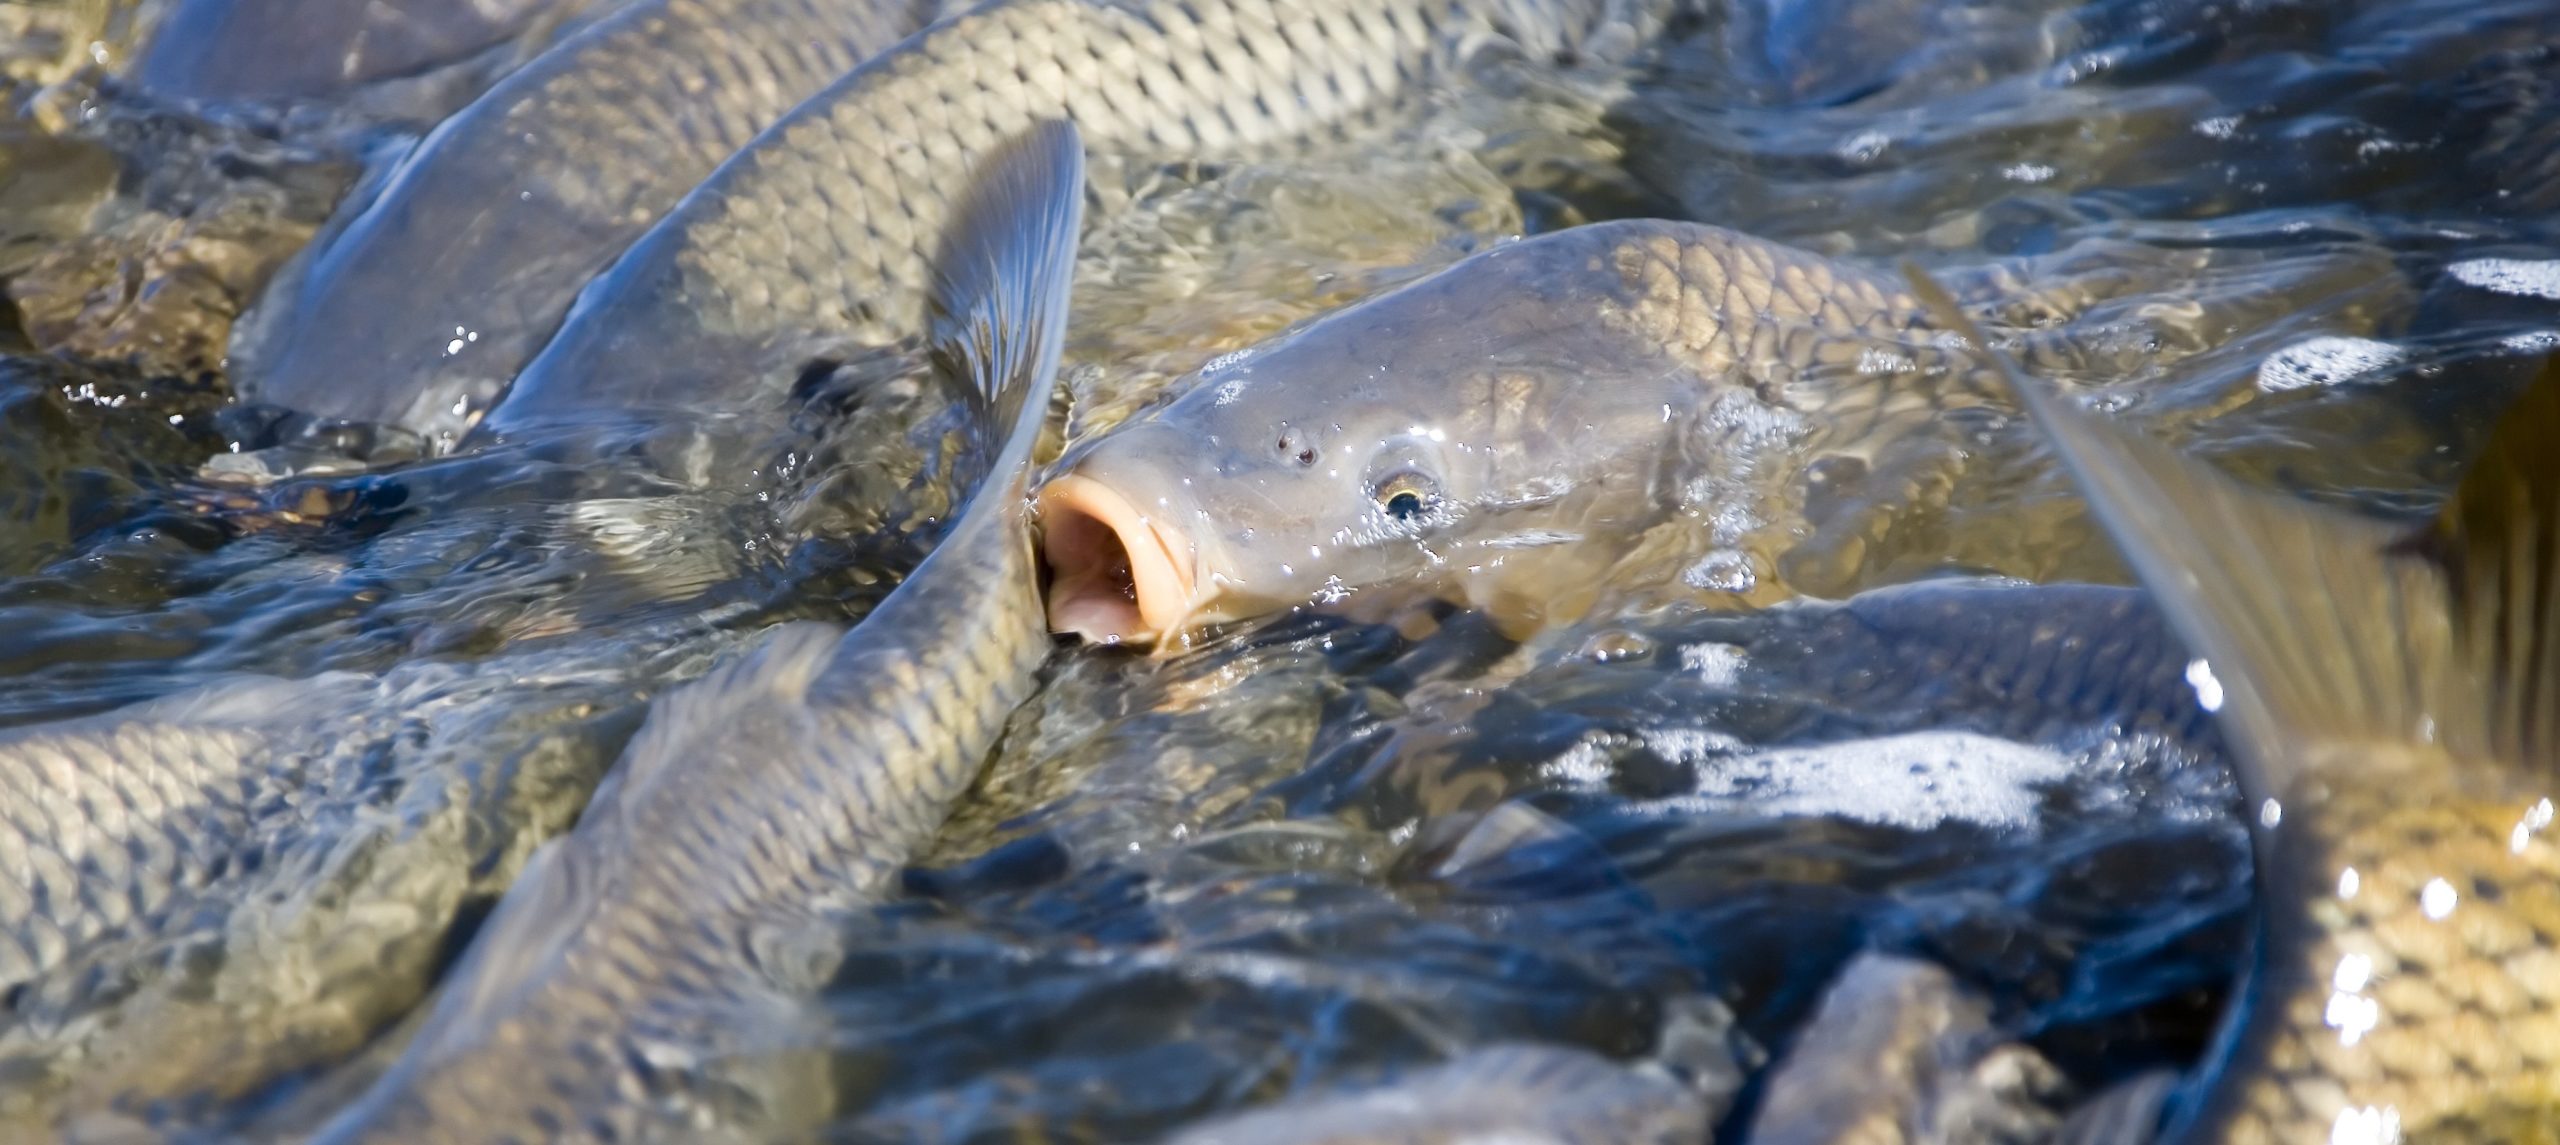 Using herpes virus to eradicate feral fish? Carp diem! – CSIROscope